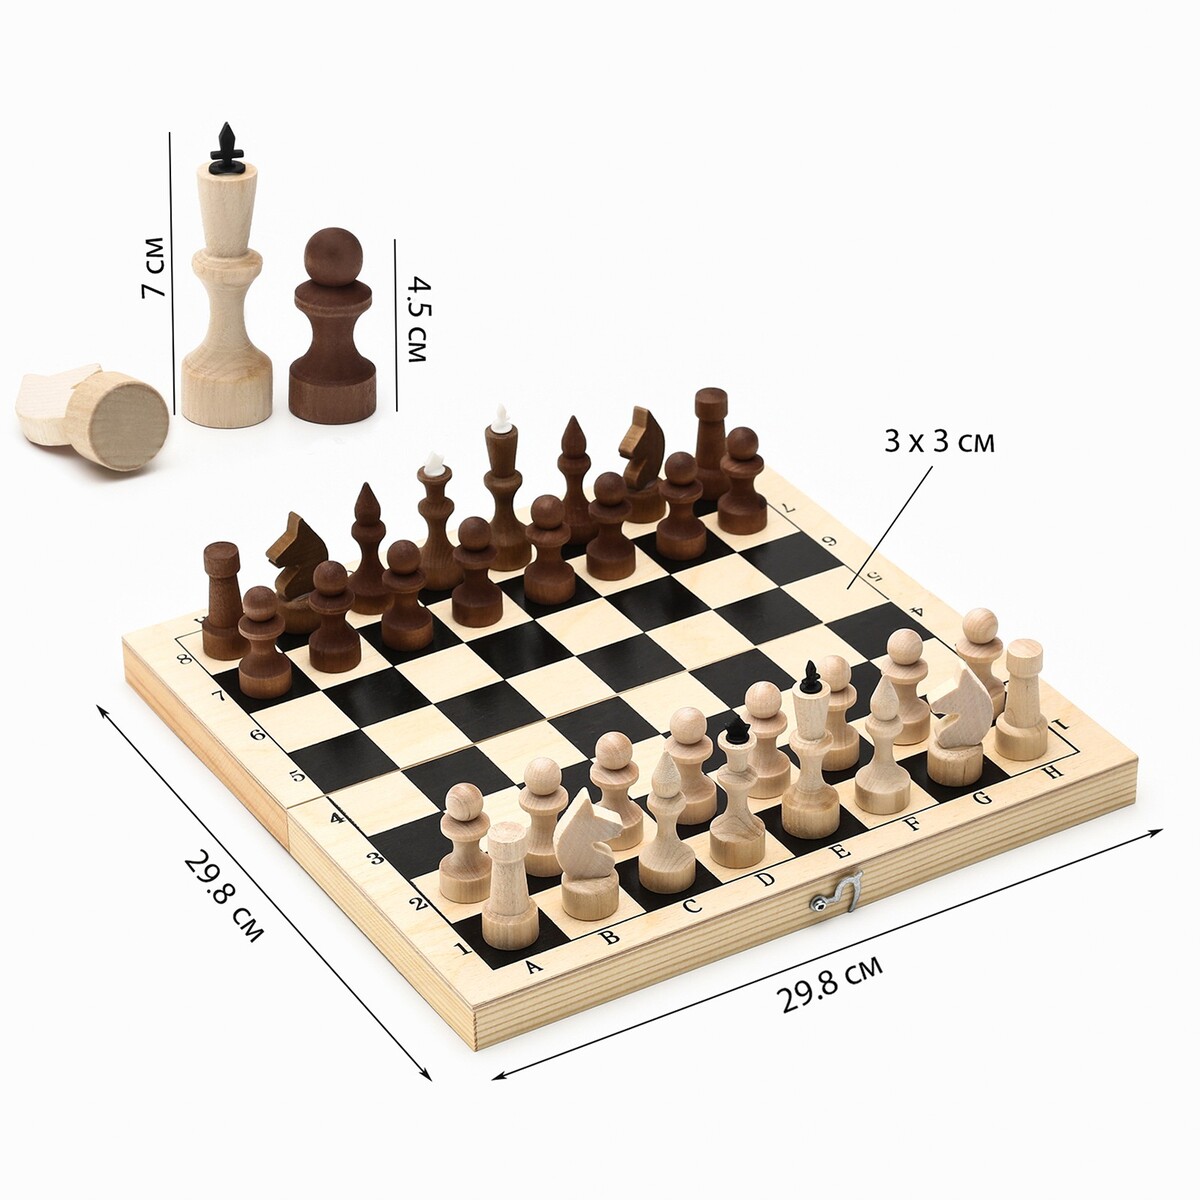 Шахматы деревянные обиходные 29.8 х 29.8 см, король h-7.2 см, пешка h-4.5 см шахматы деревянные 40 х 40 см